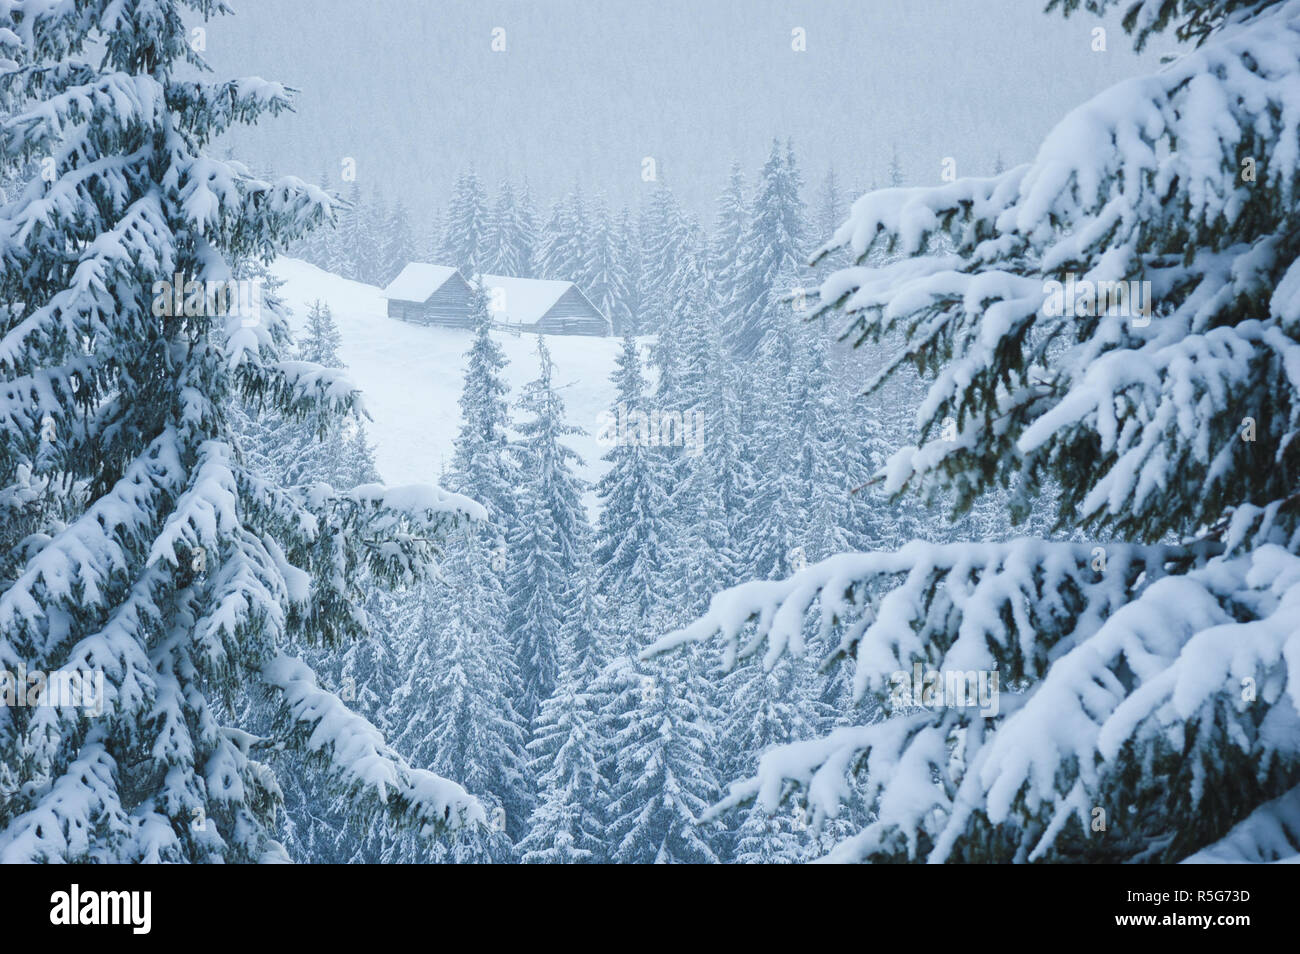 Scène d'hiver avec une maison de montagne dans la neige. Forêt couverte de givre. Jour nuageux Banque D'Images